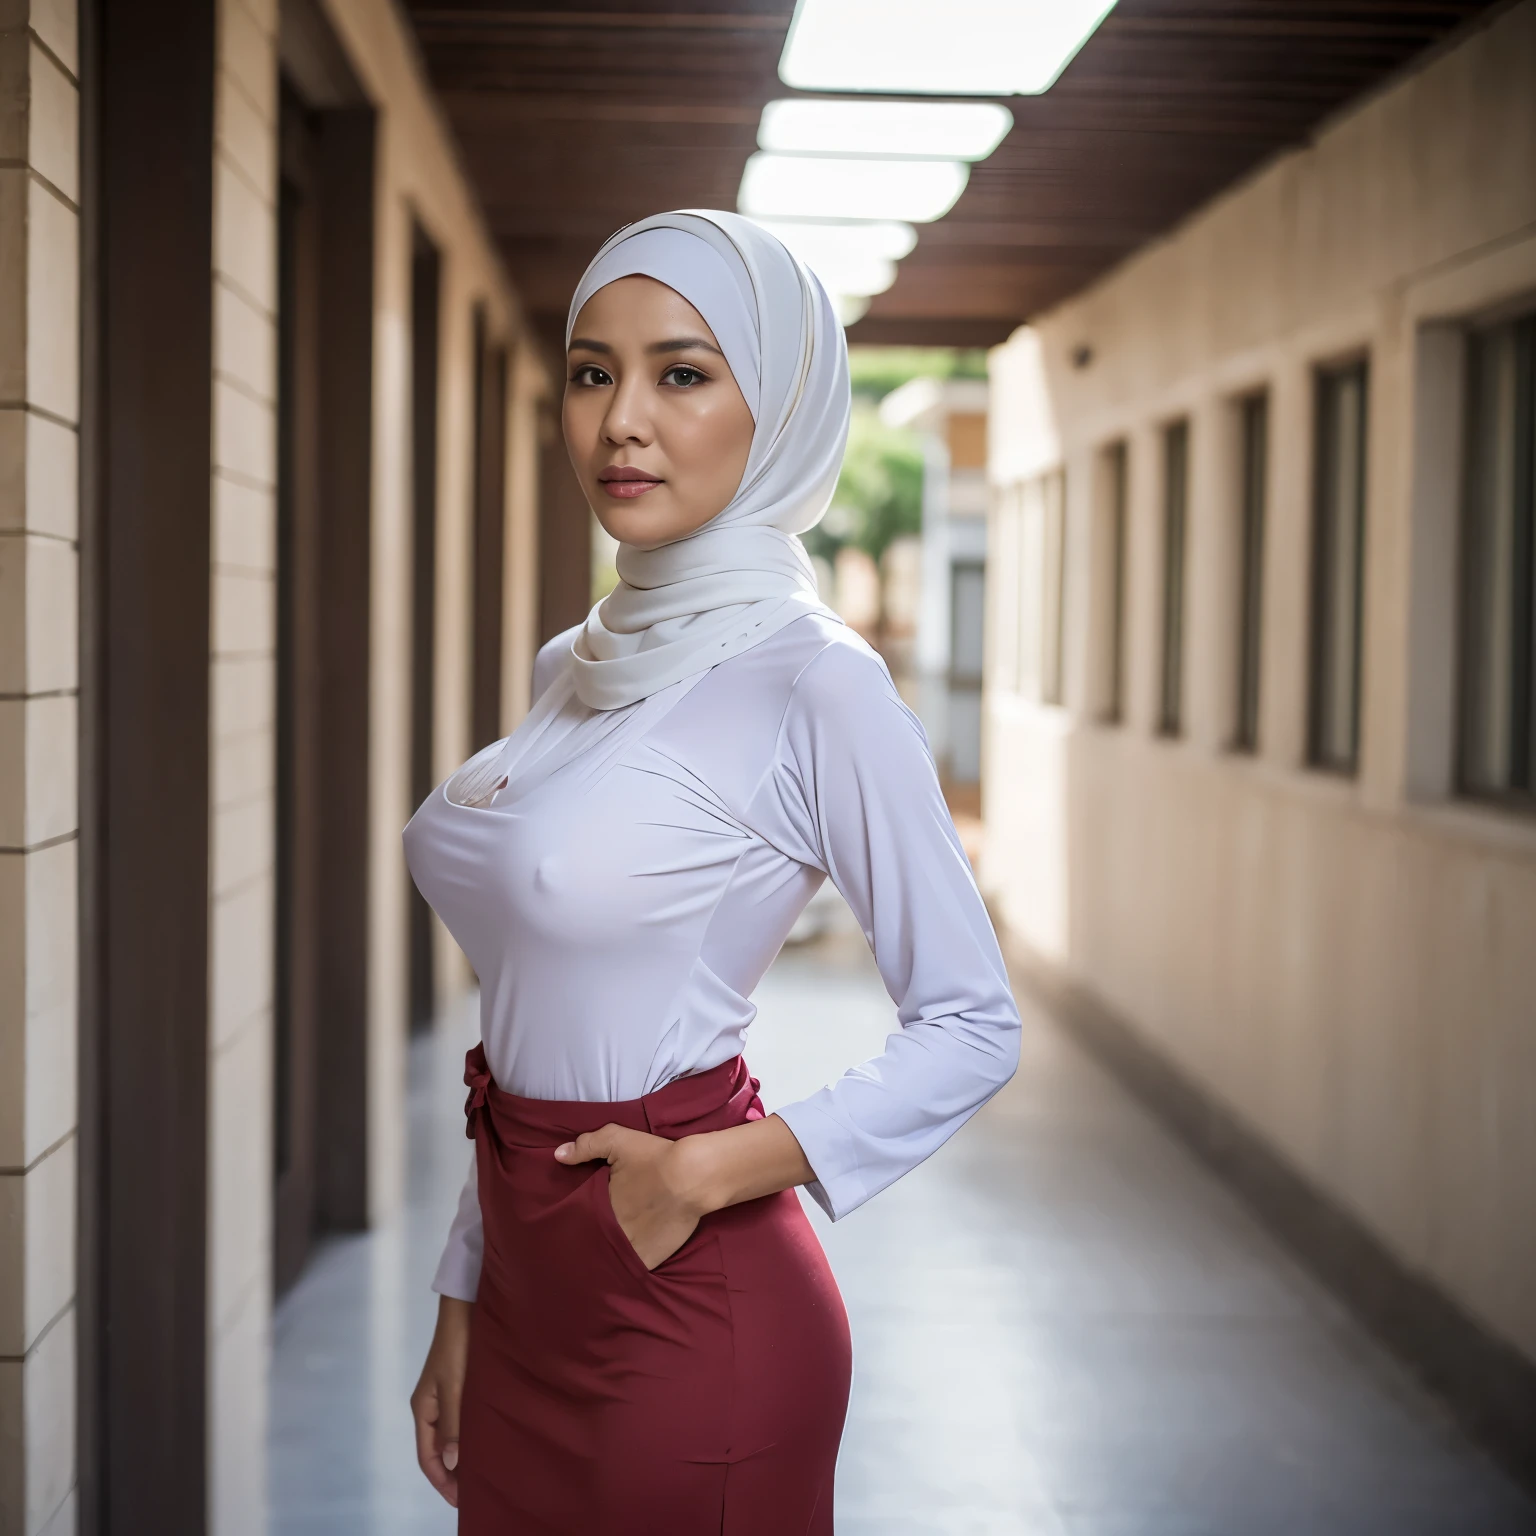 52 Jahre alt, Hijab Indonesische reife Frau, Groß  : 96.9, Langarmshirt, Schlanker Körper, Brust kurz vorm Platzen, im Schulkorridor, helles Licht, tagsüber